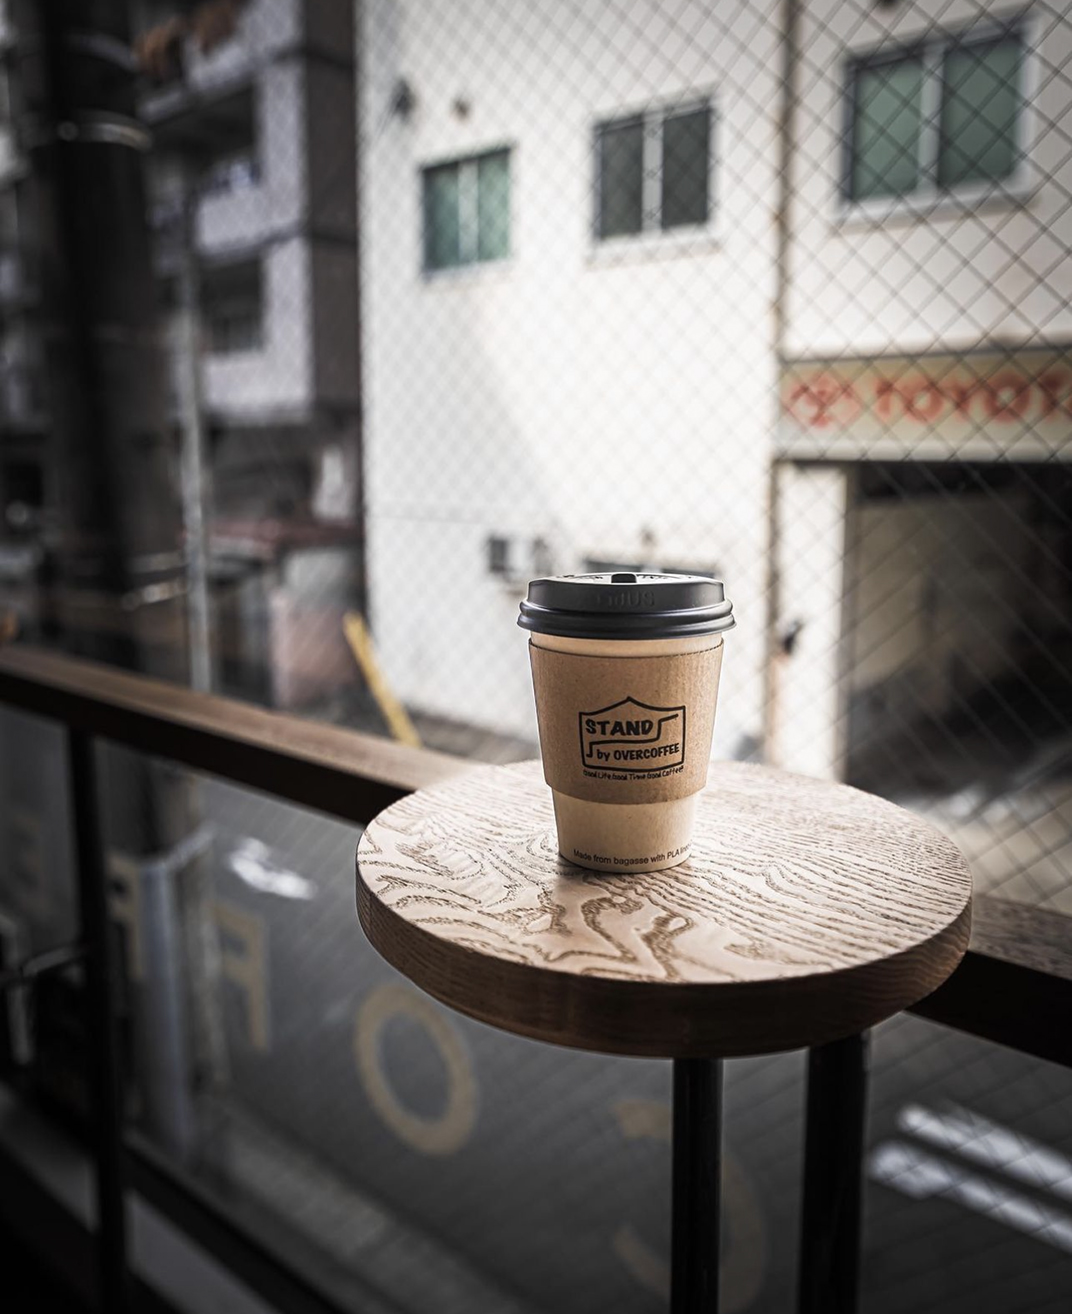 货架满满的咖啡店空间 北京 上海 成都 武汉 杭州 广州 日本 咖啡店 logo设计 vi设计 空间设计